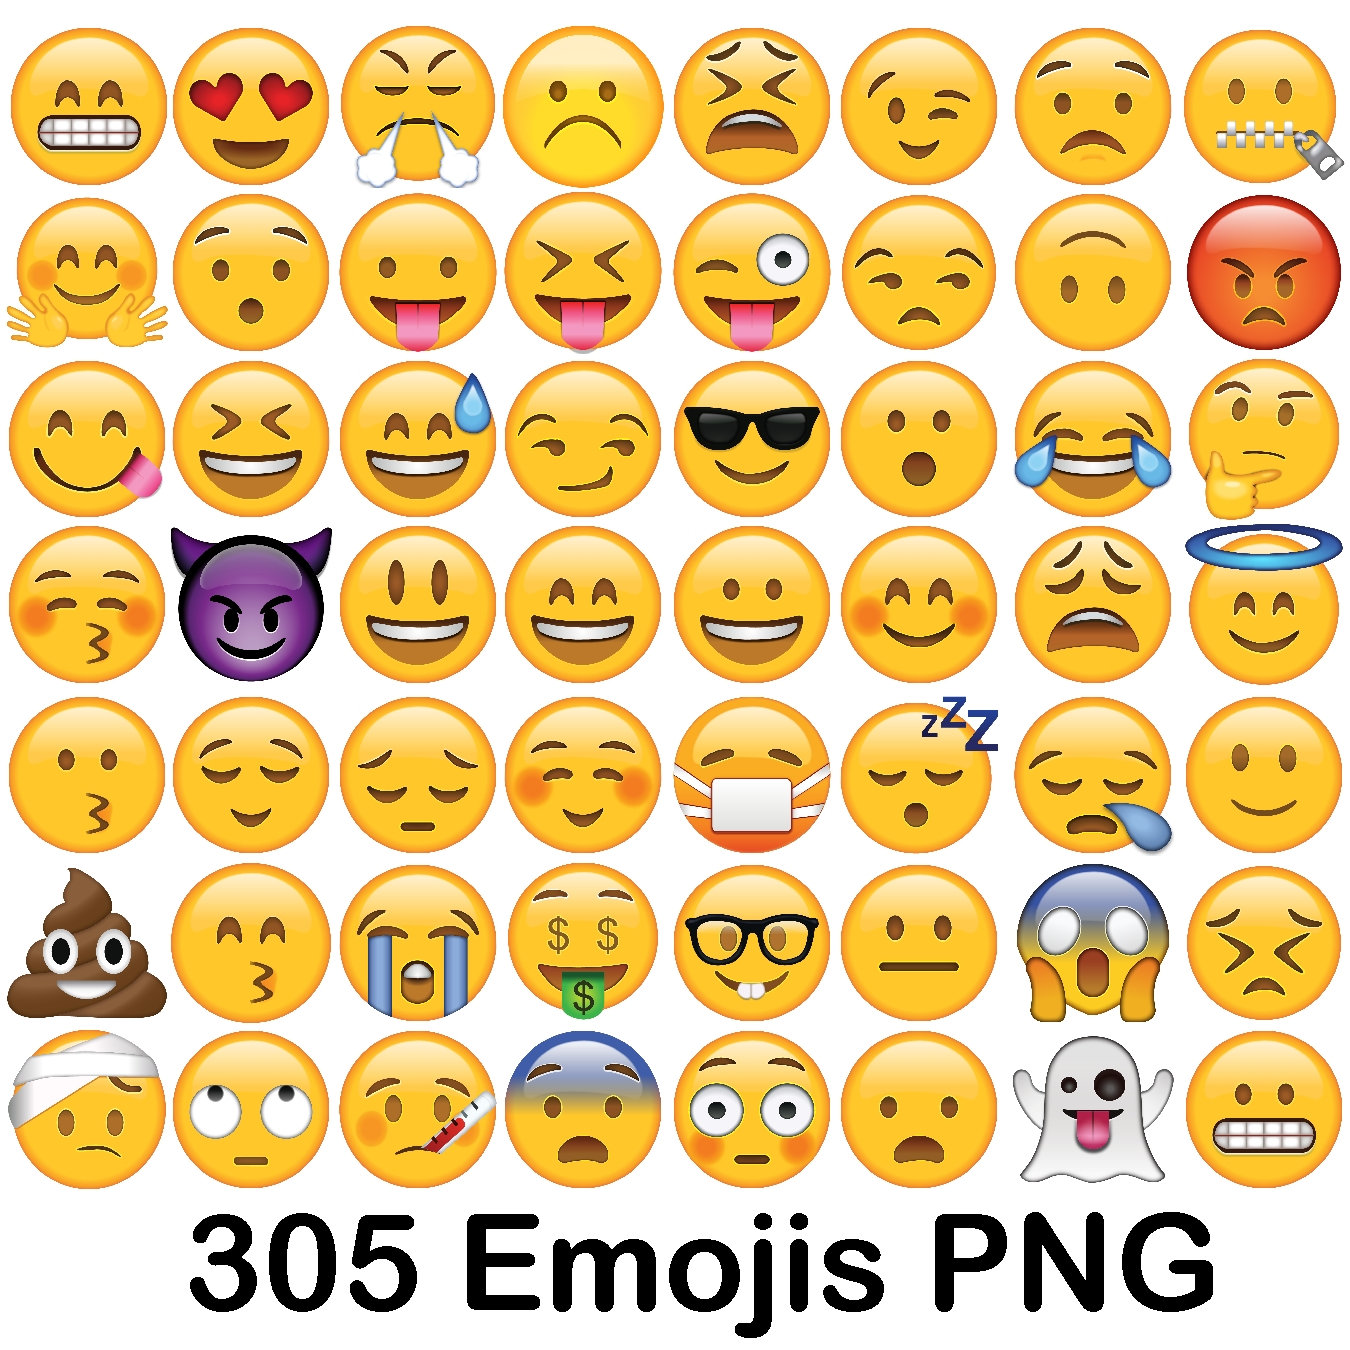 100 clipart iphone emoticon. Emoji smileys smiley vector